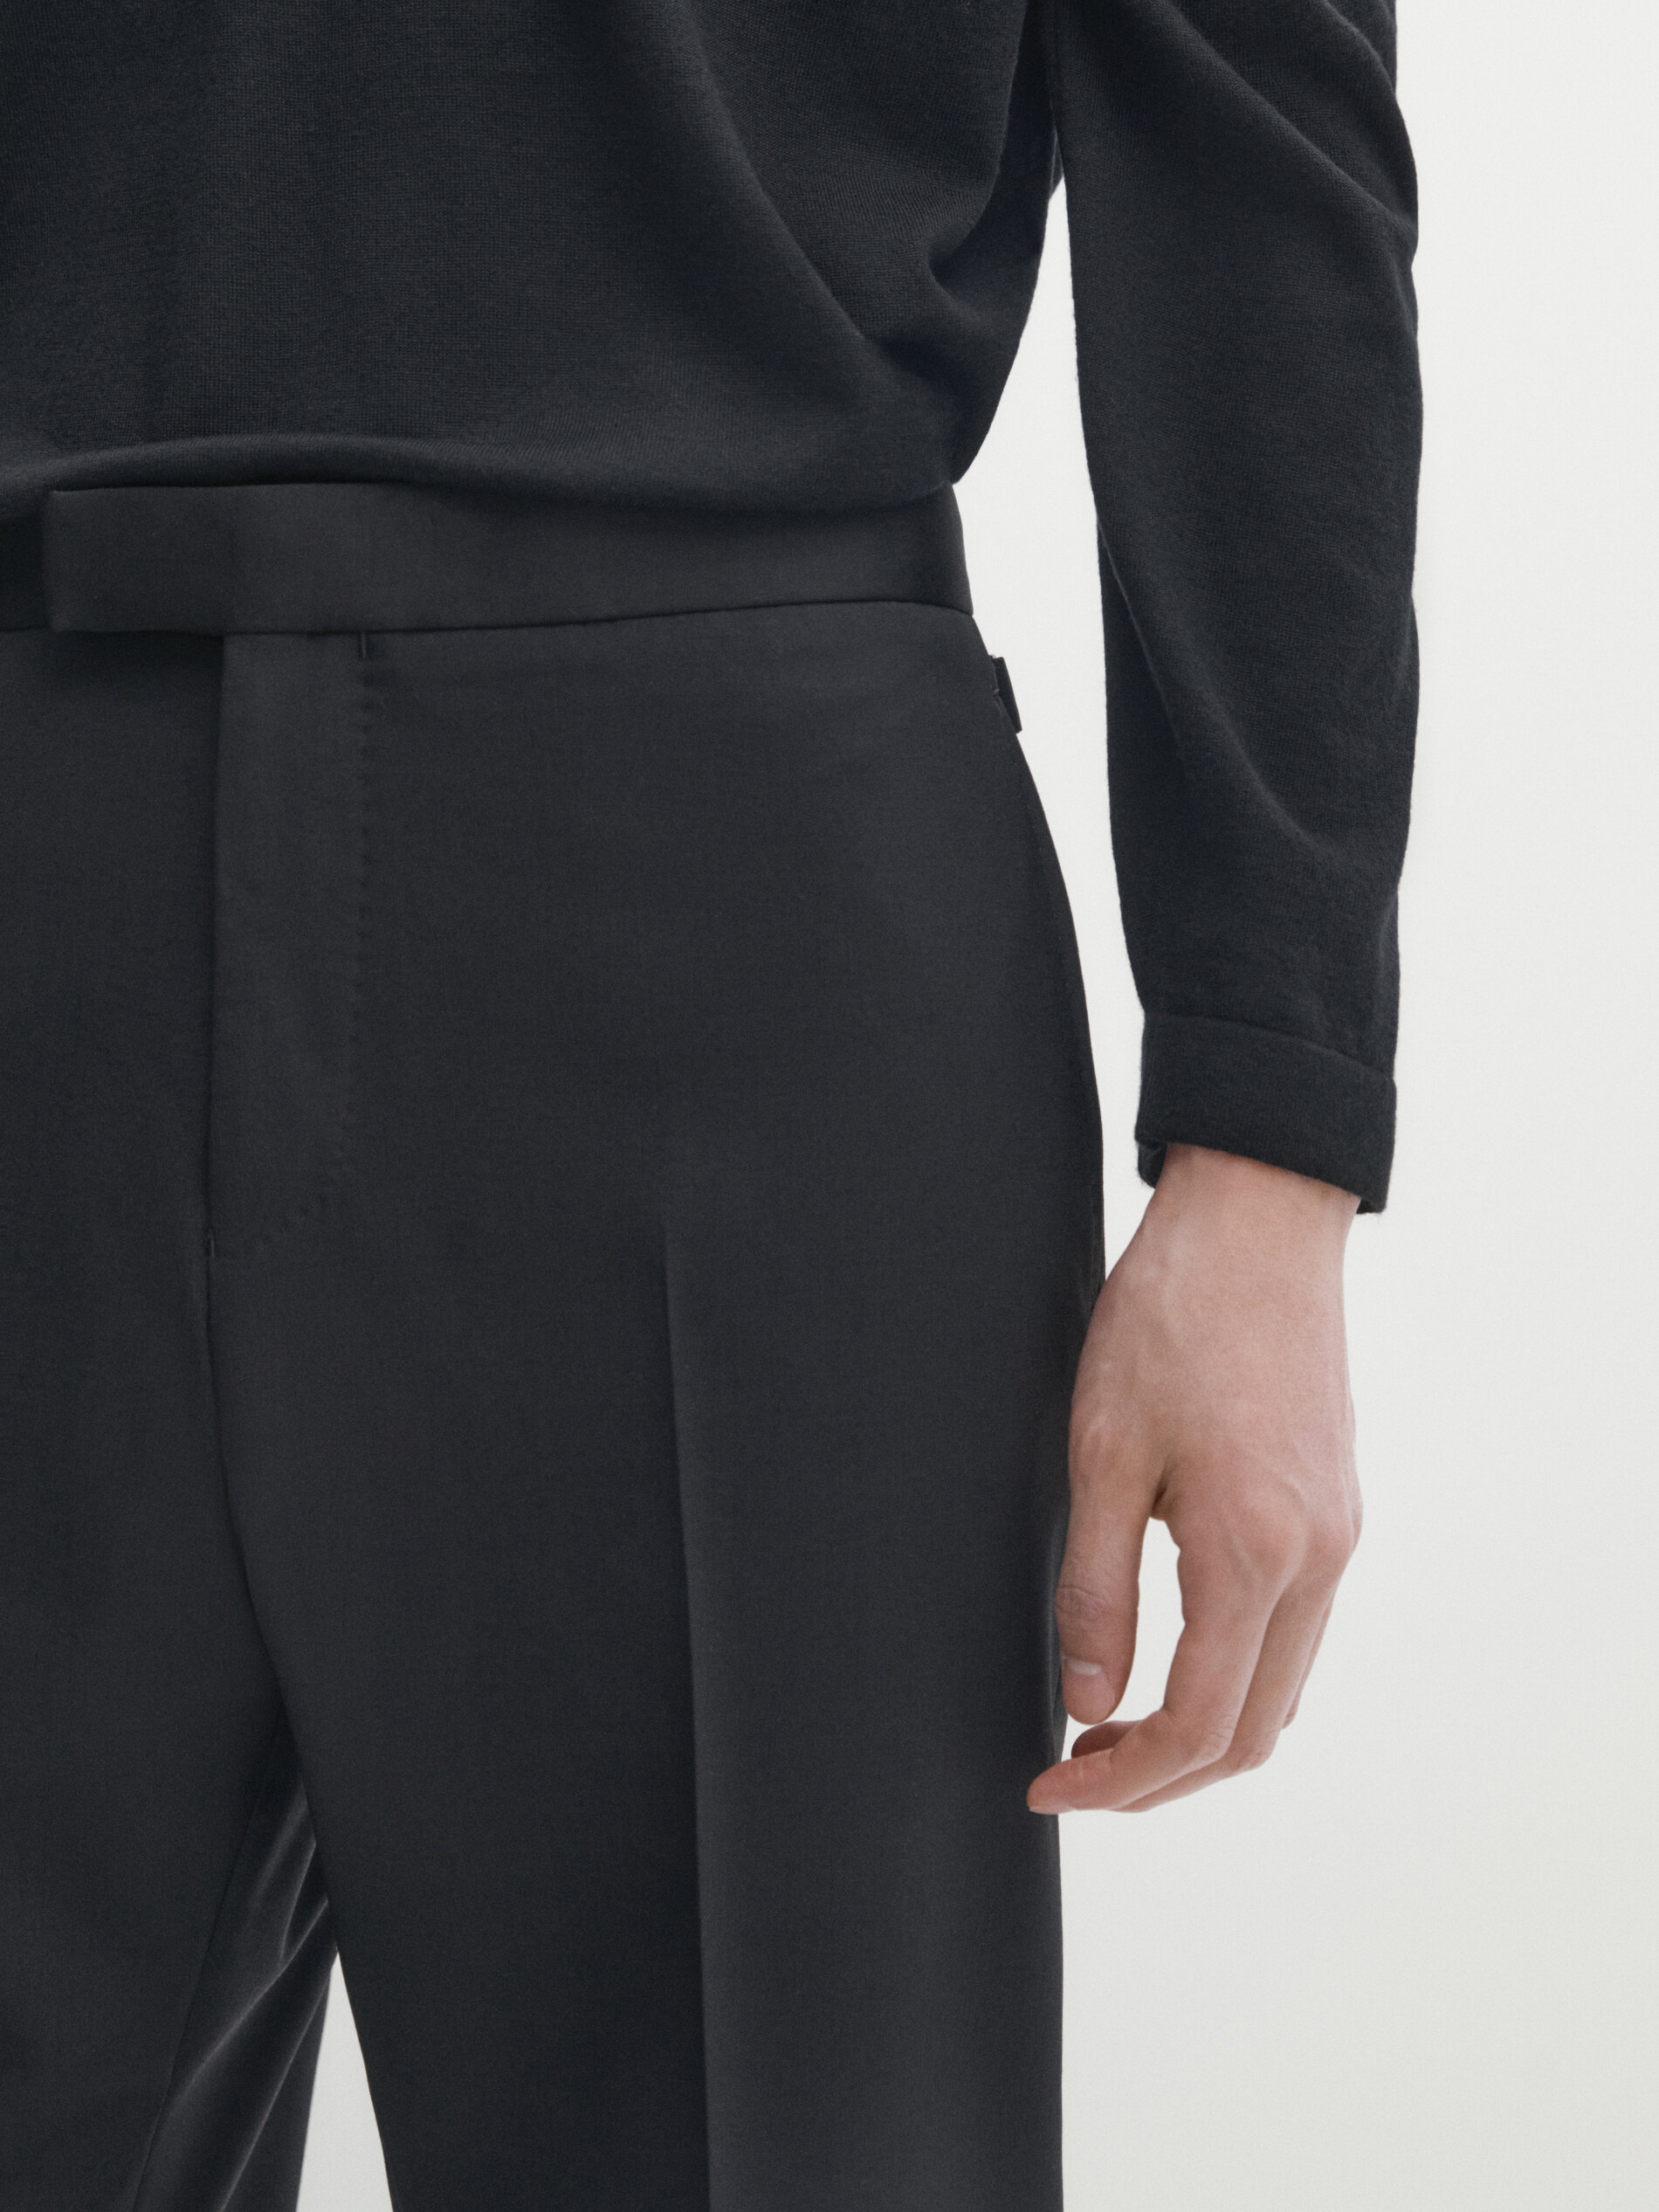 Noak Windowpan Plaid Grey Black Suit – MenSuitsPage